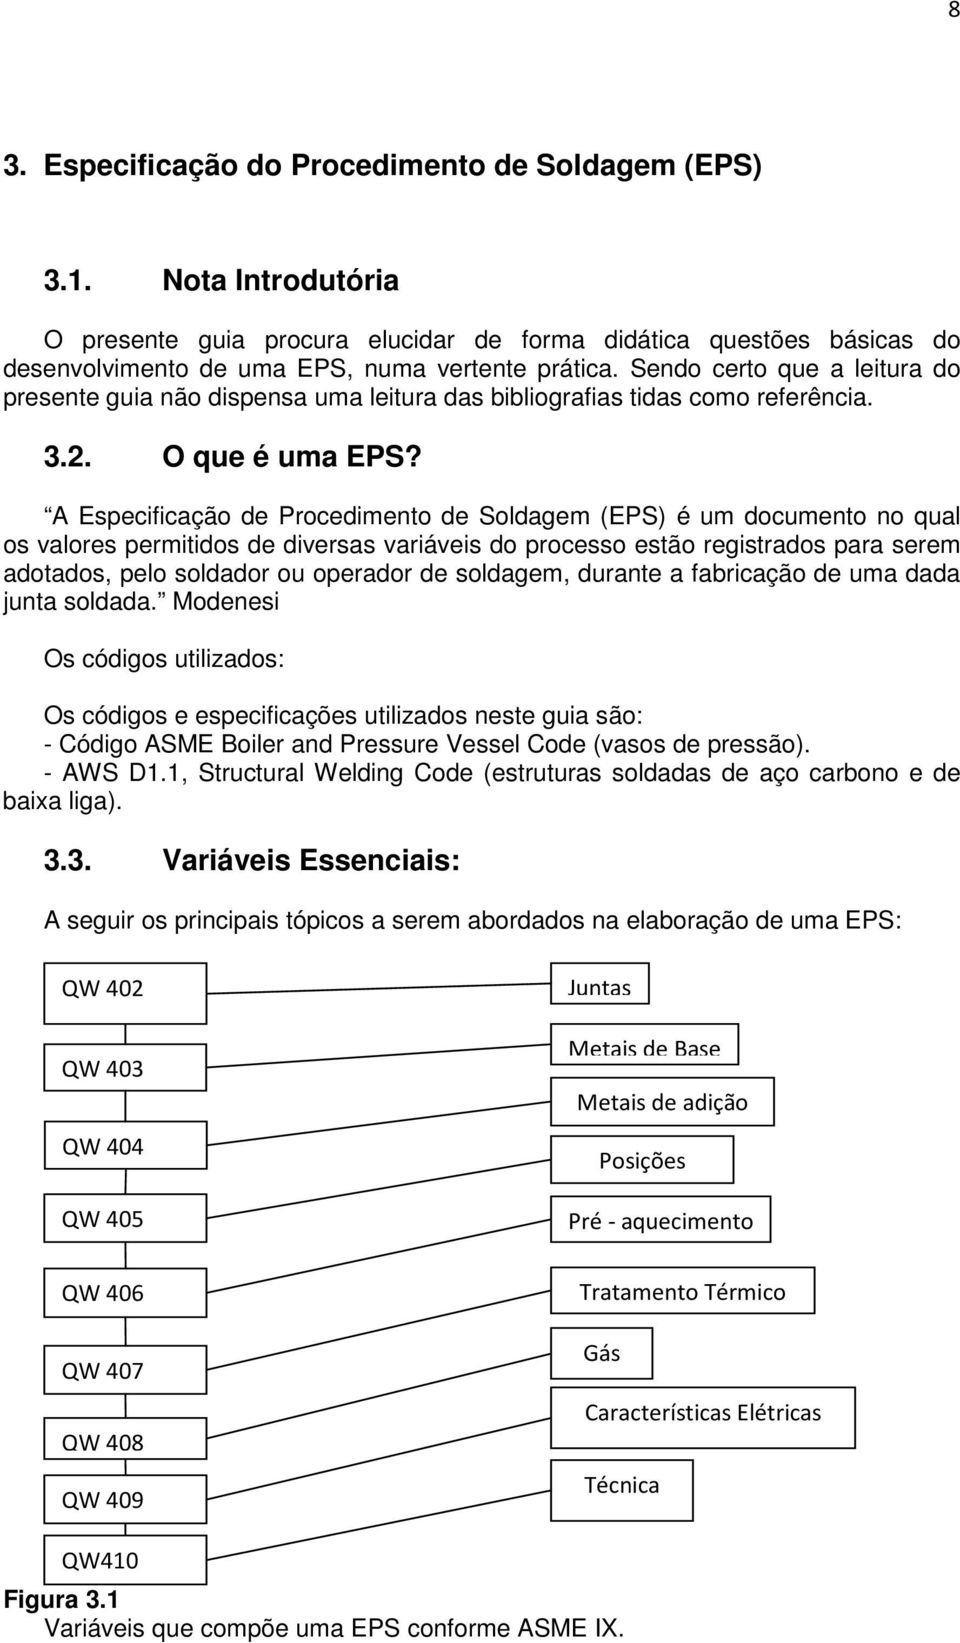 A Especificação de Procedimento de Soldagem (EPS) é um documento no qual os valores permitidos de diversas variáveis do processo estão registrados para serem adotados, pelo soldador ou operador de